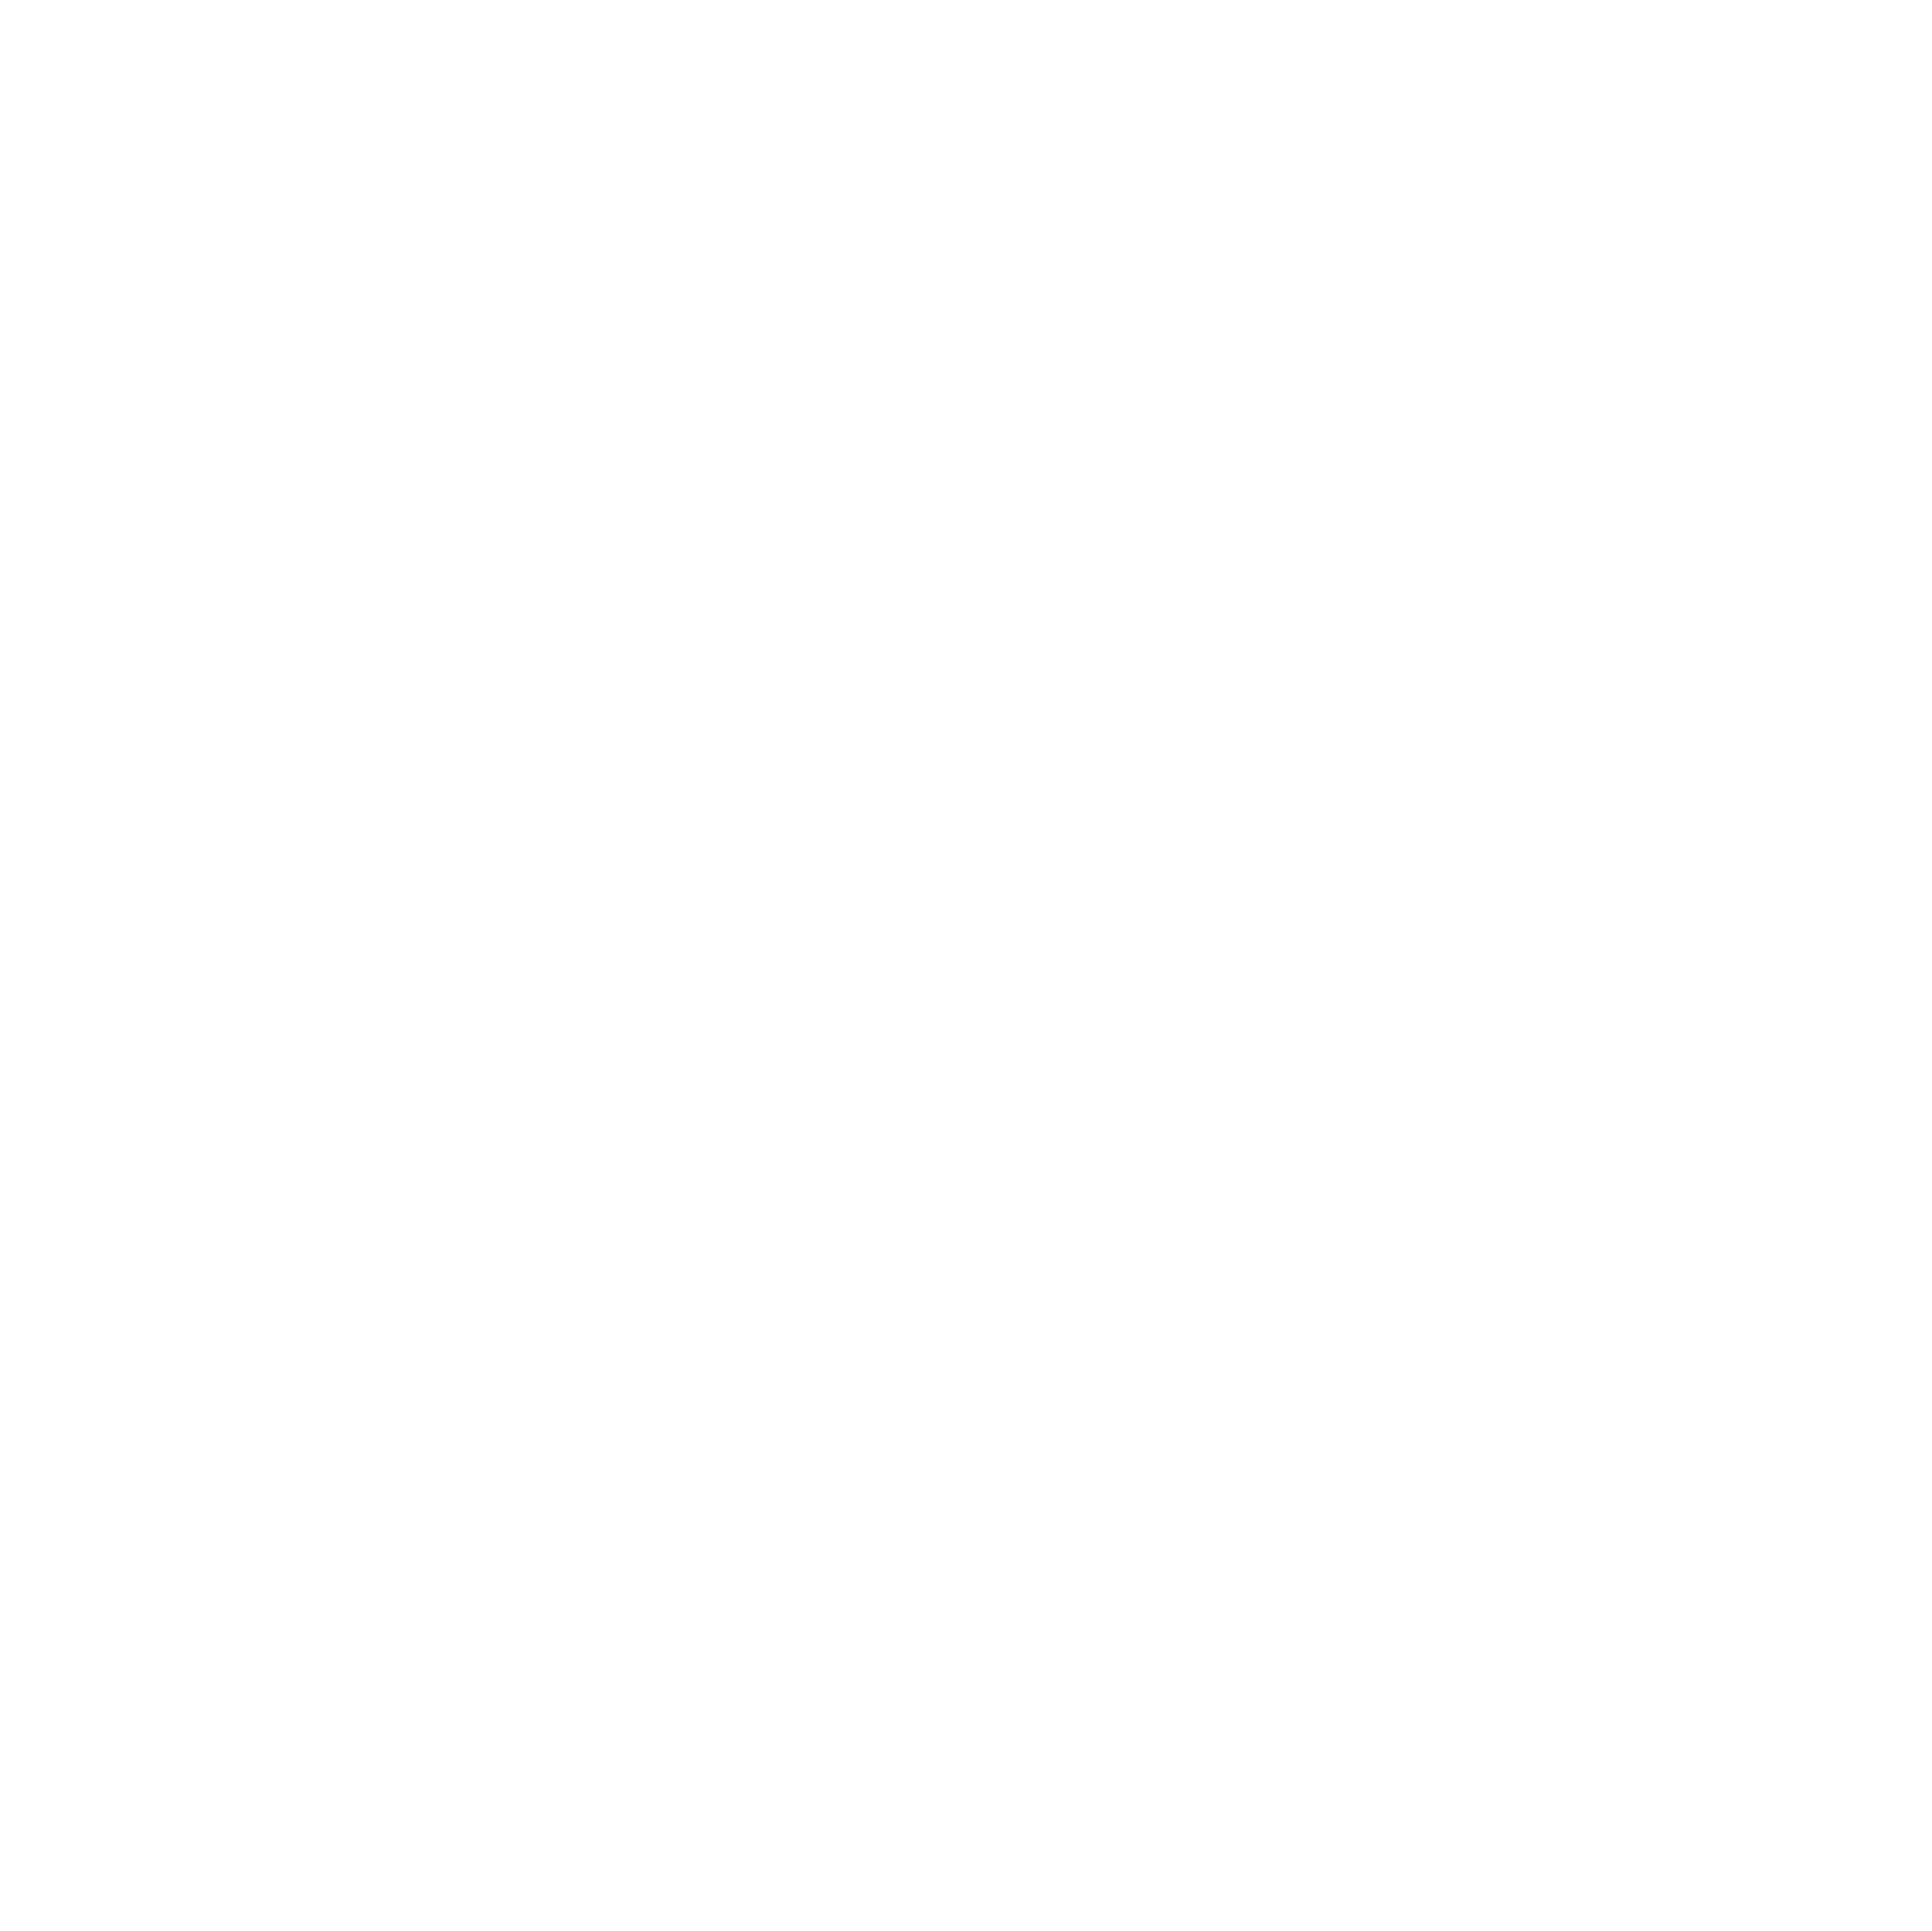 White logo for Instagram